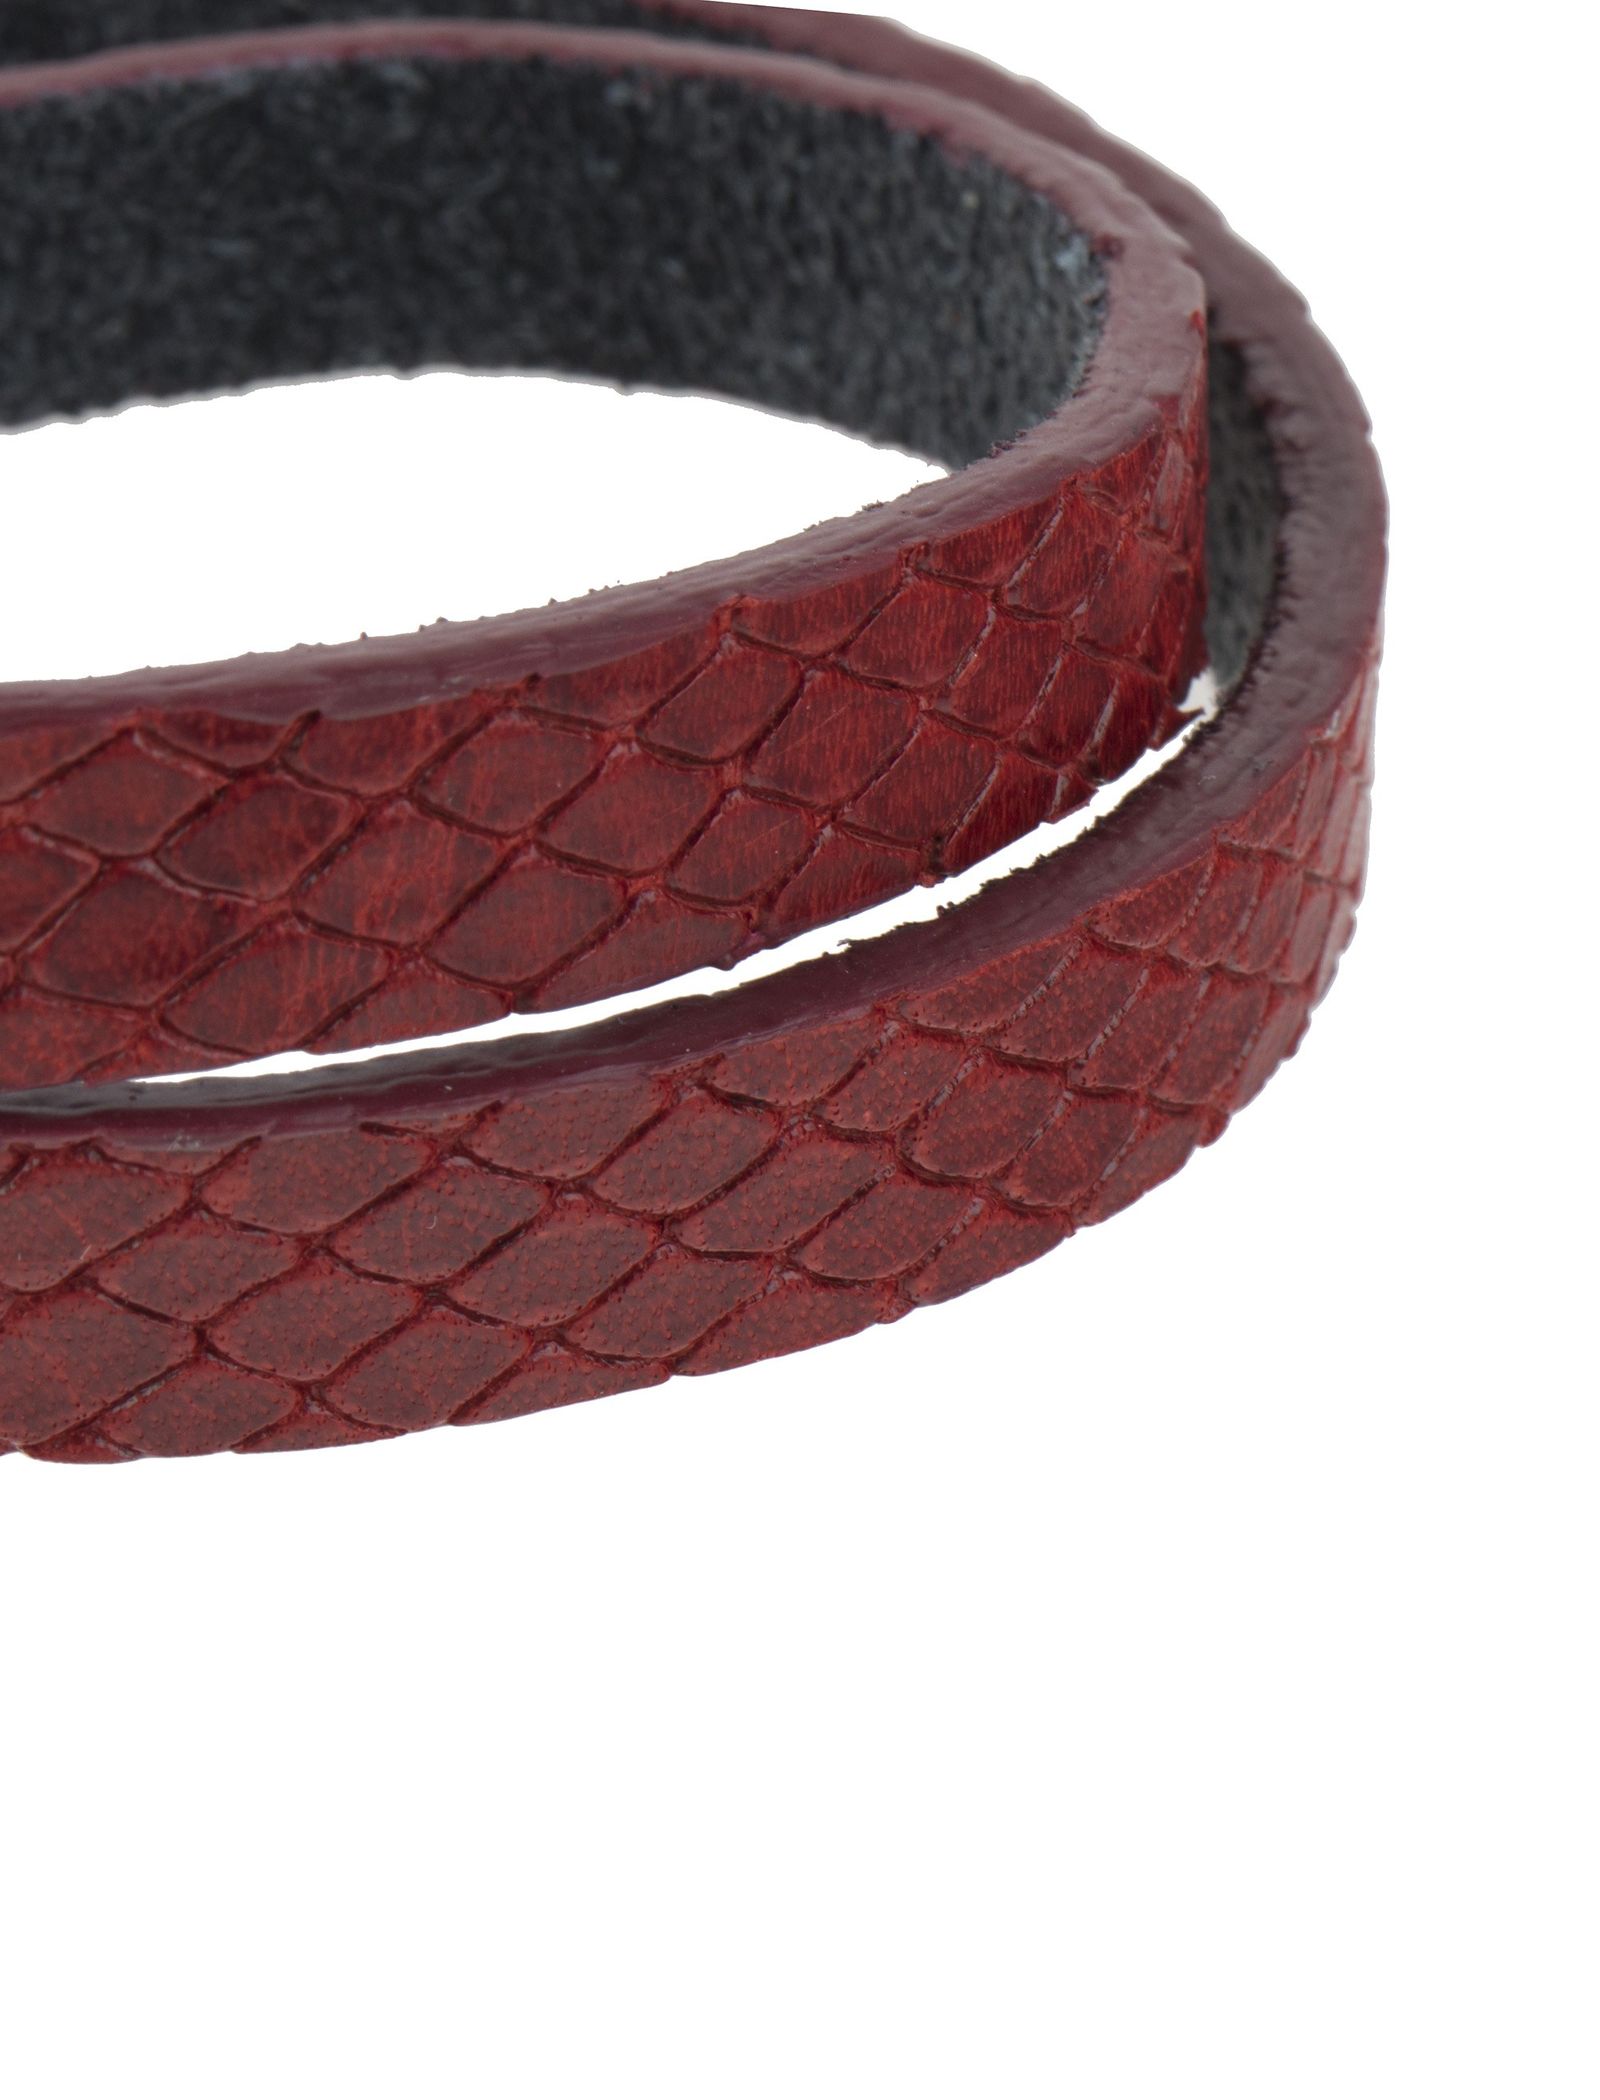 دستبند چرم زنانه - ماکو دیزاین تک سایز - قرمز - 4